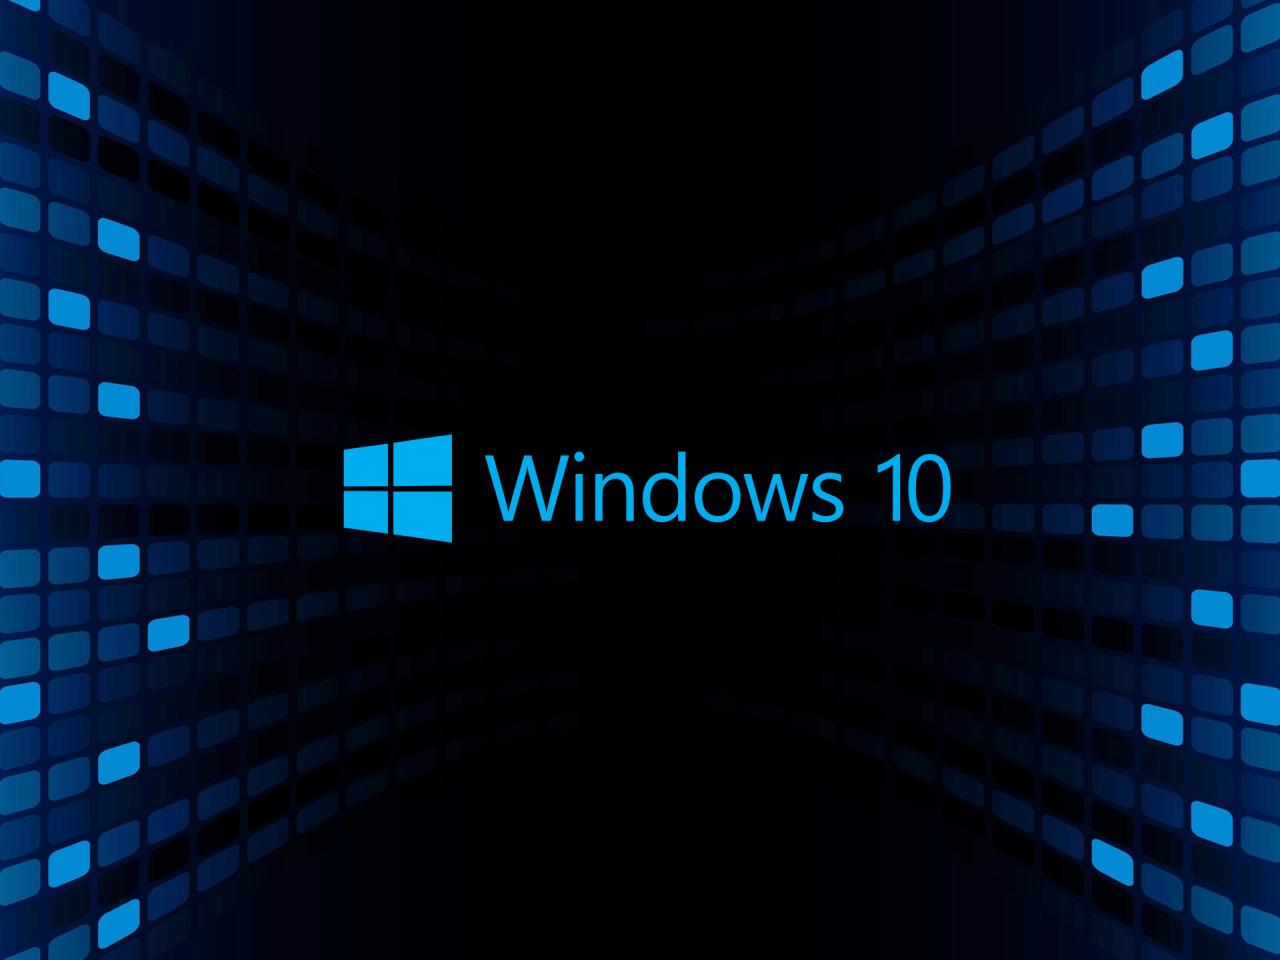 windows 10 wallpaper hd 3d for desktop,blue,text,font,technology,electric blue